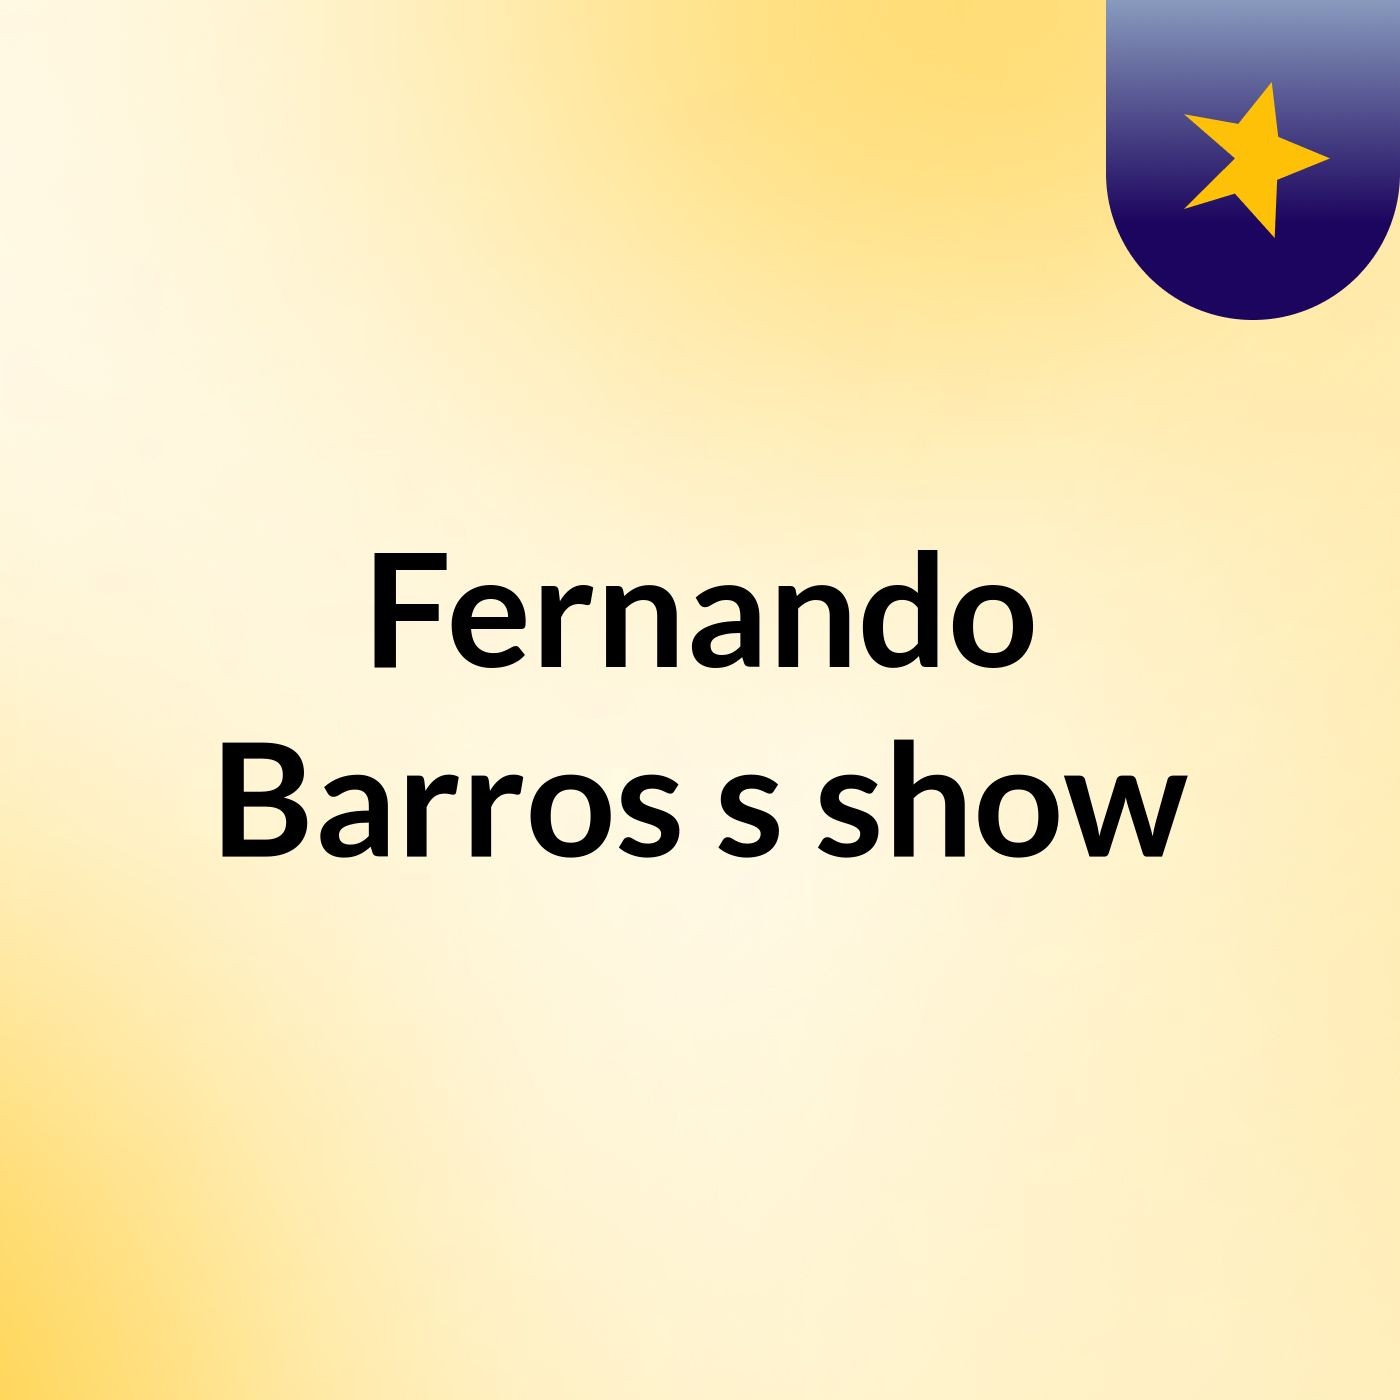 Fernando Barros's show